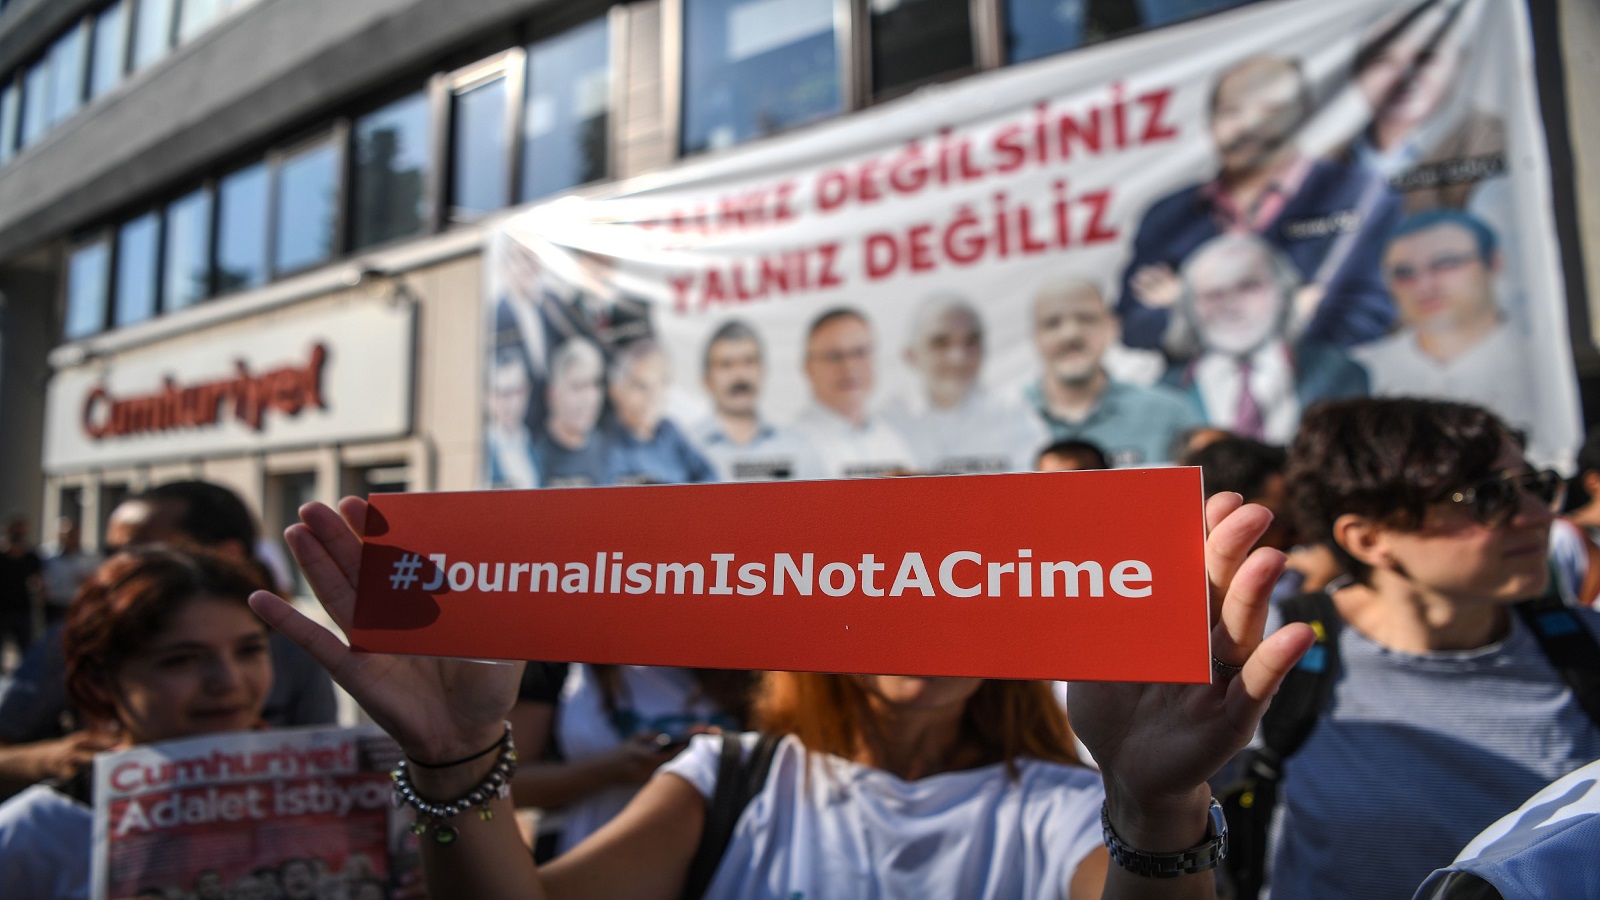 ارتفاع عدد الصحافيين المسجونين.. وتركيا في الصدارة